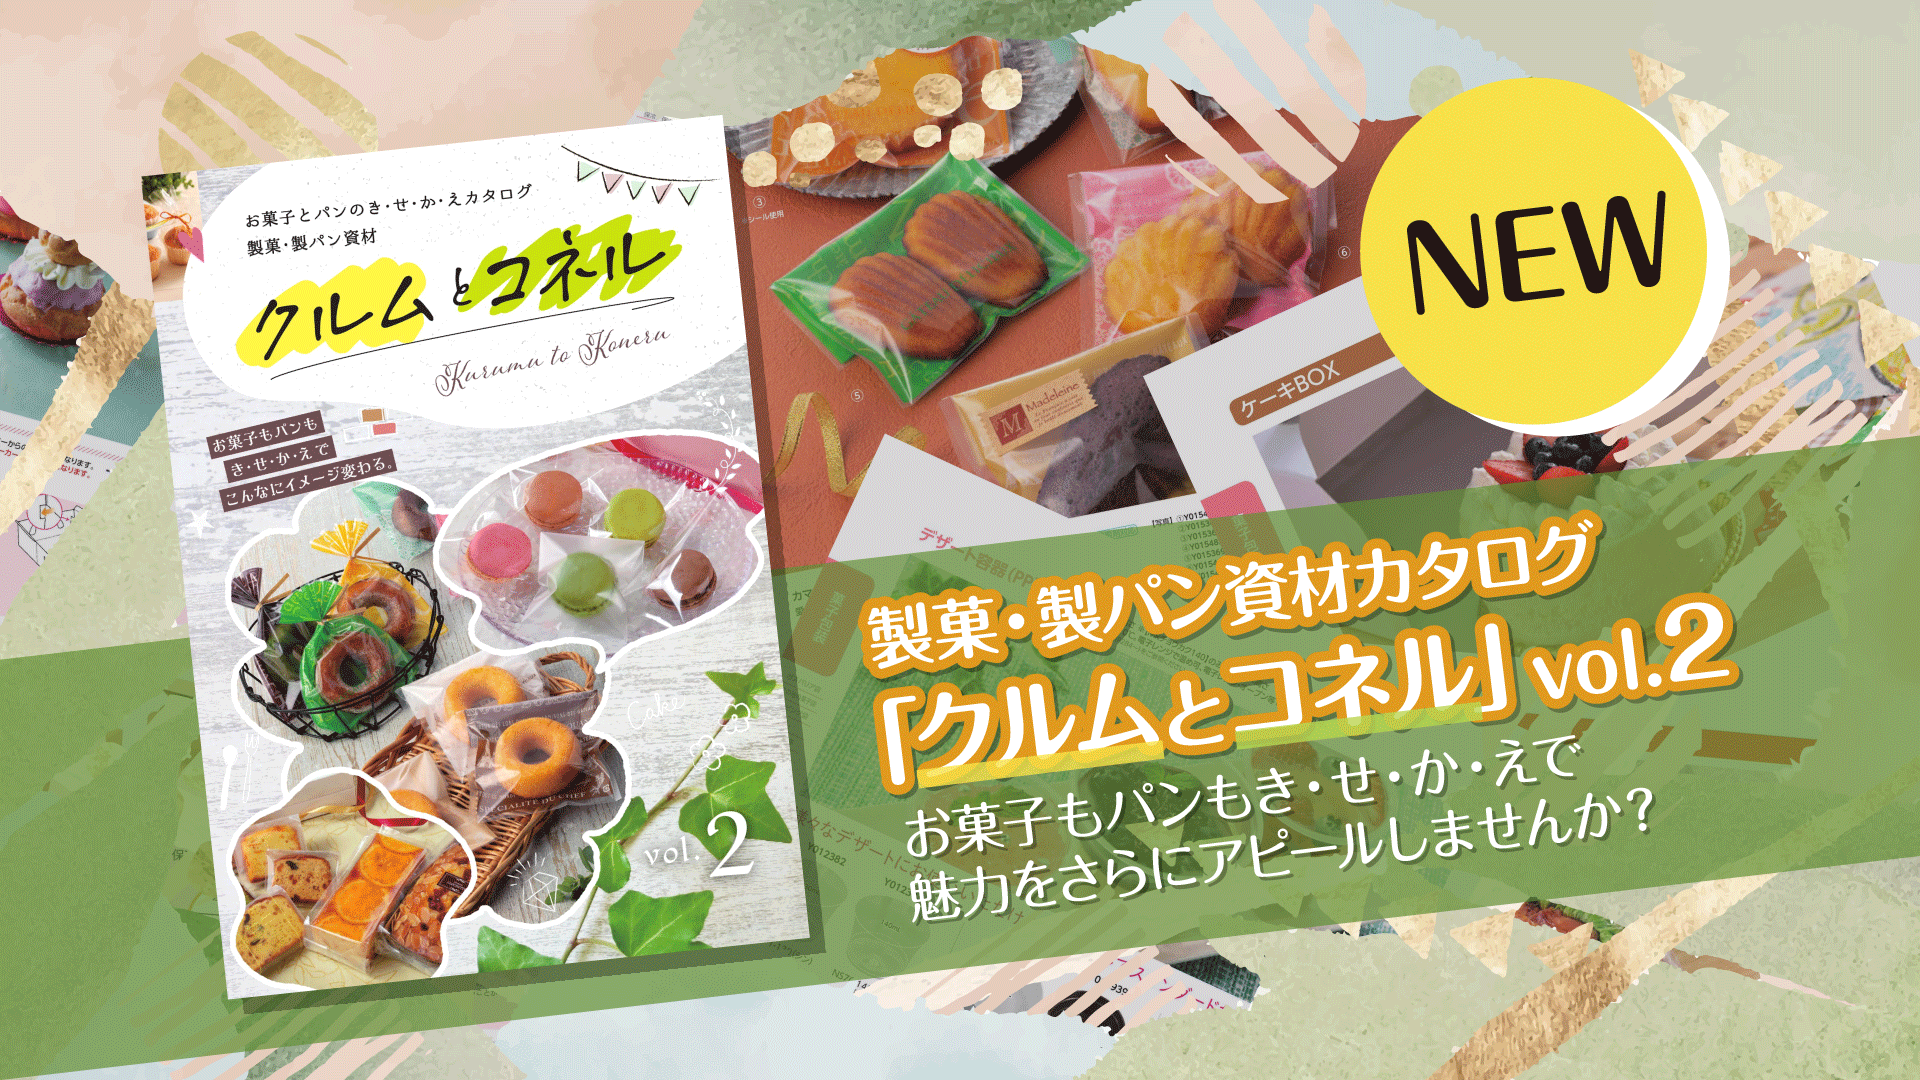 菓子・製パン資材カタログ「クルムとコネル」カタログvol.2が発刊！